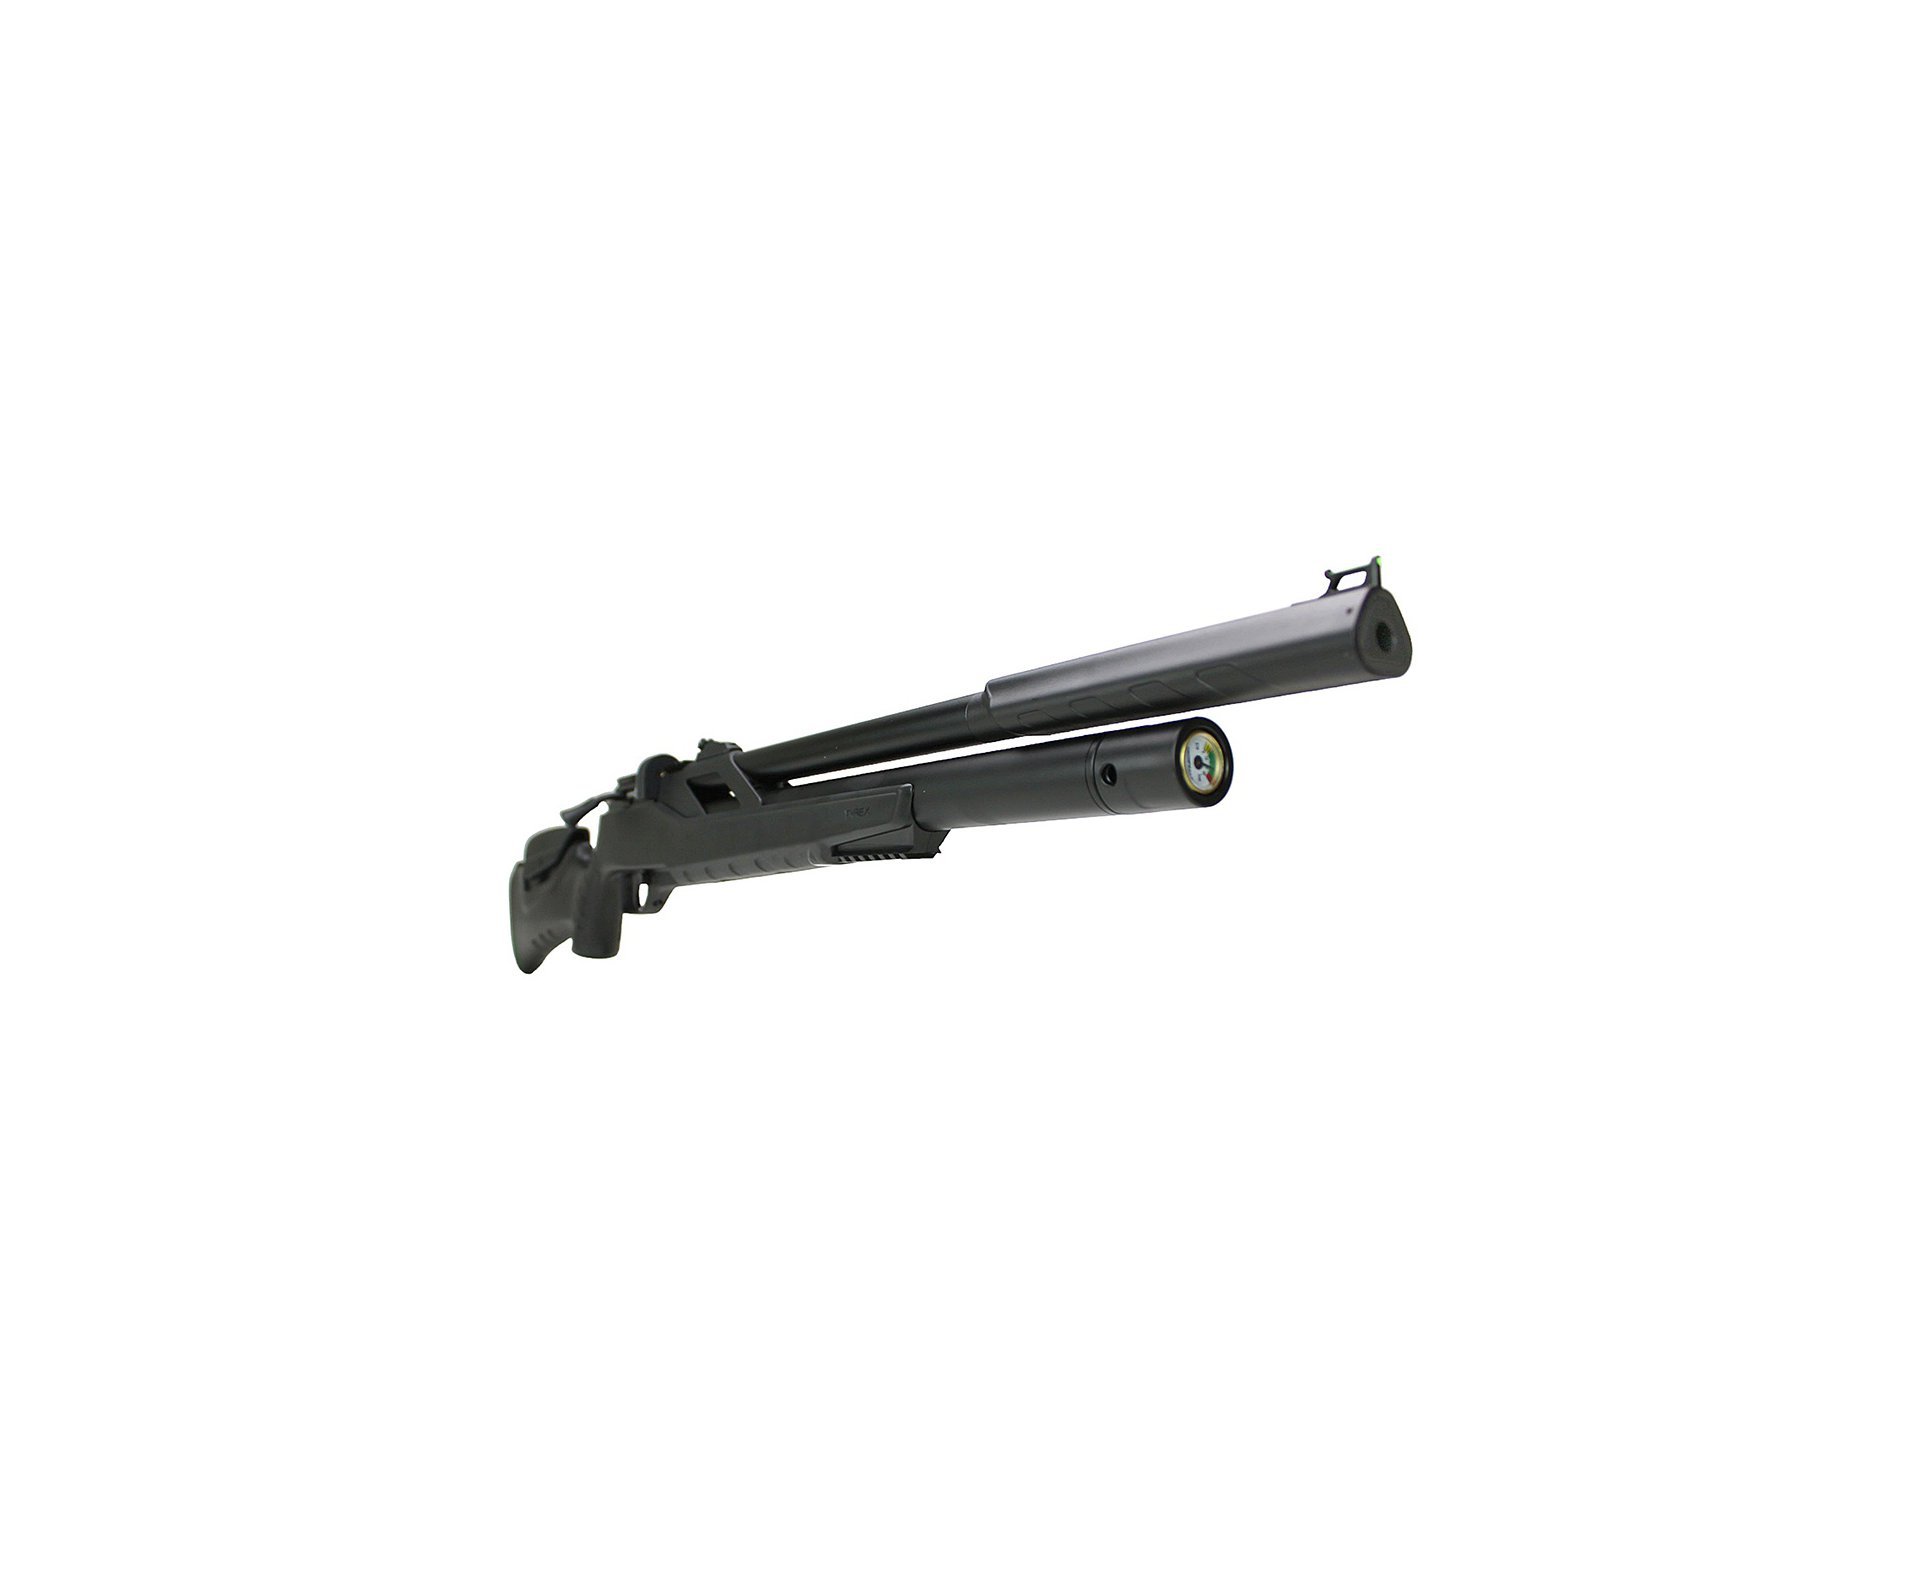 Carabina de Pressão PCP Artemis T-REX 5.5mm com Válvula Reguladora - Fixxar + Luneta 4-16x50 + Mount